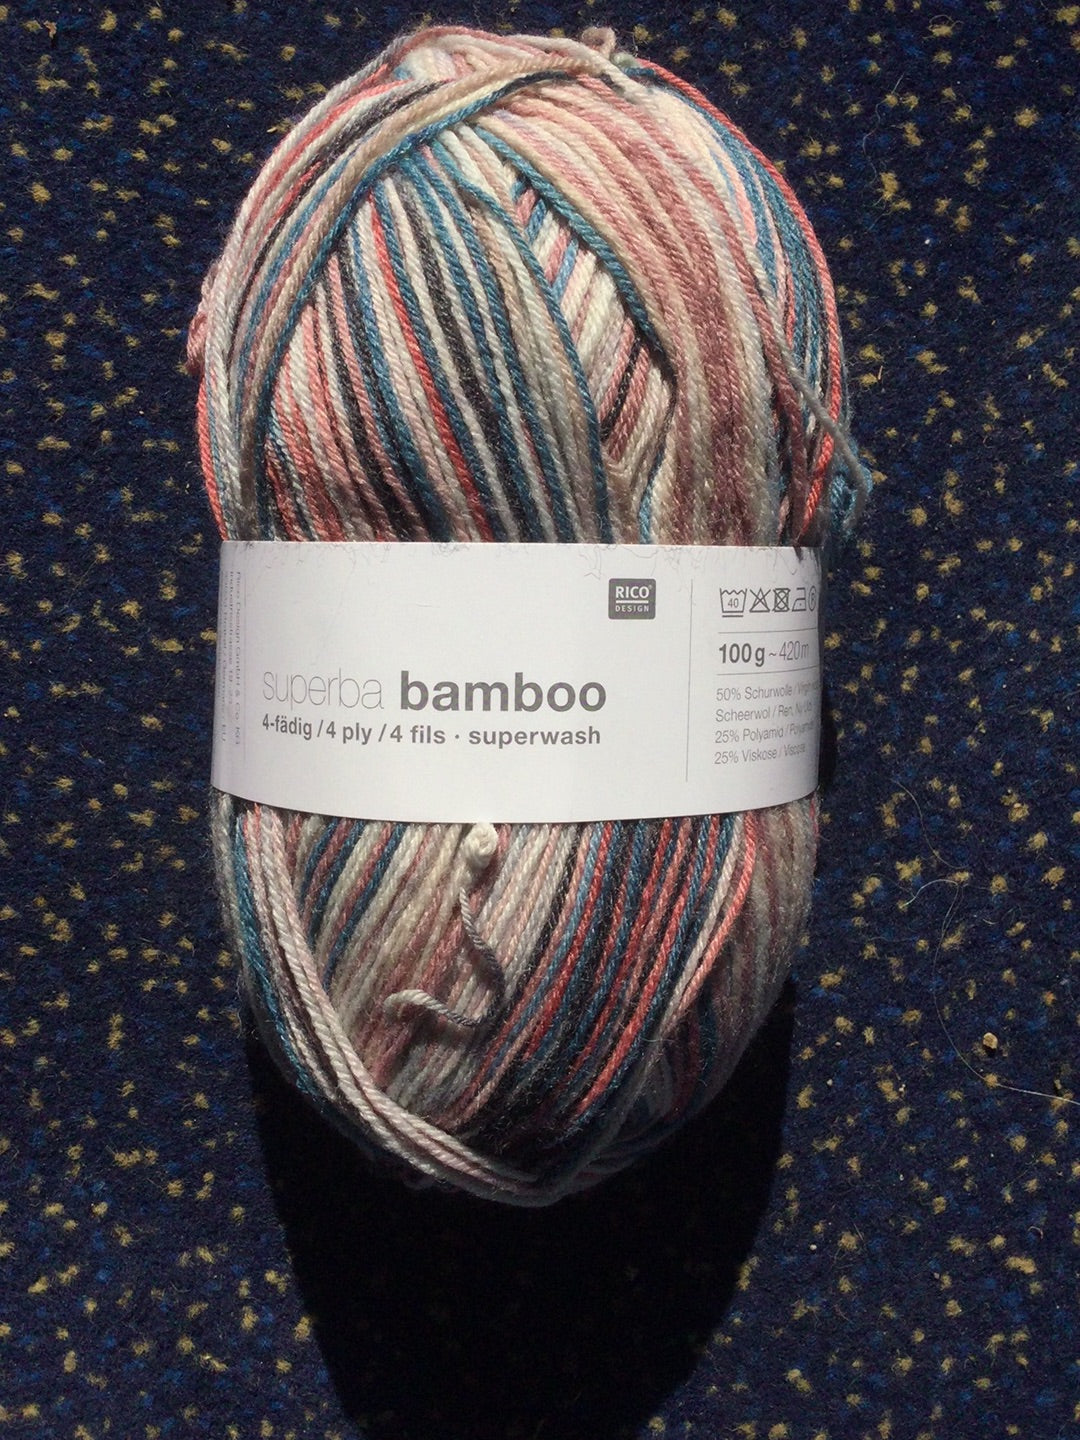 Rico Superba Superwash Bamboo 4ply sock wool